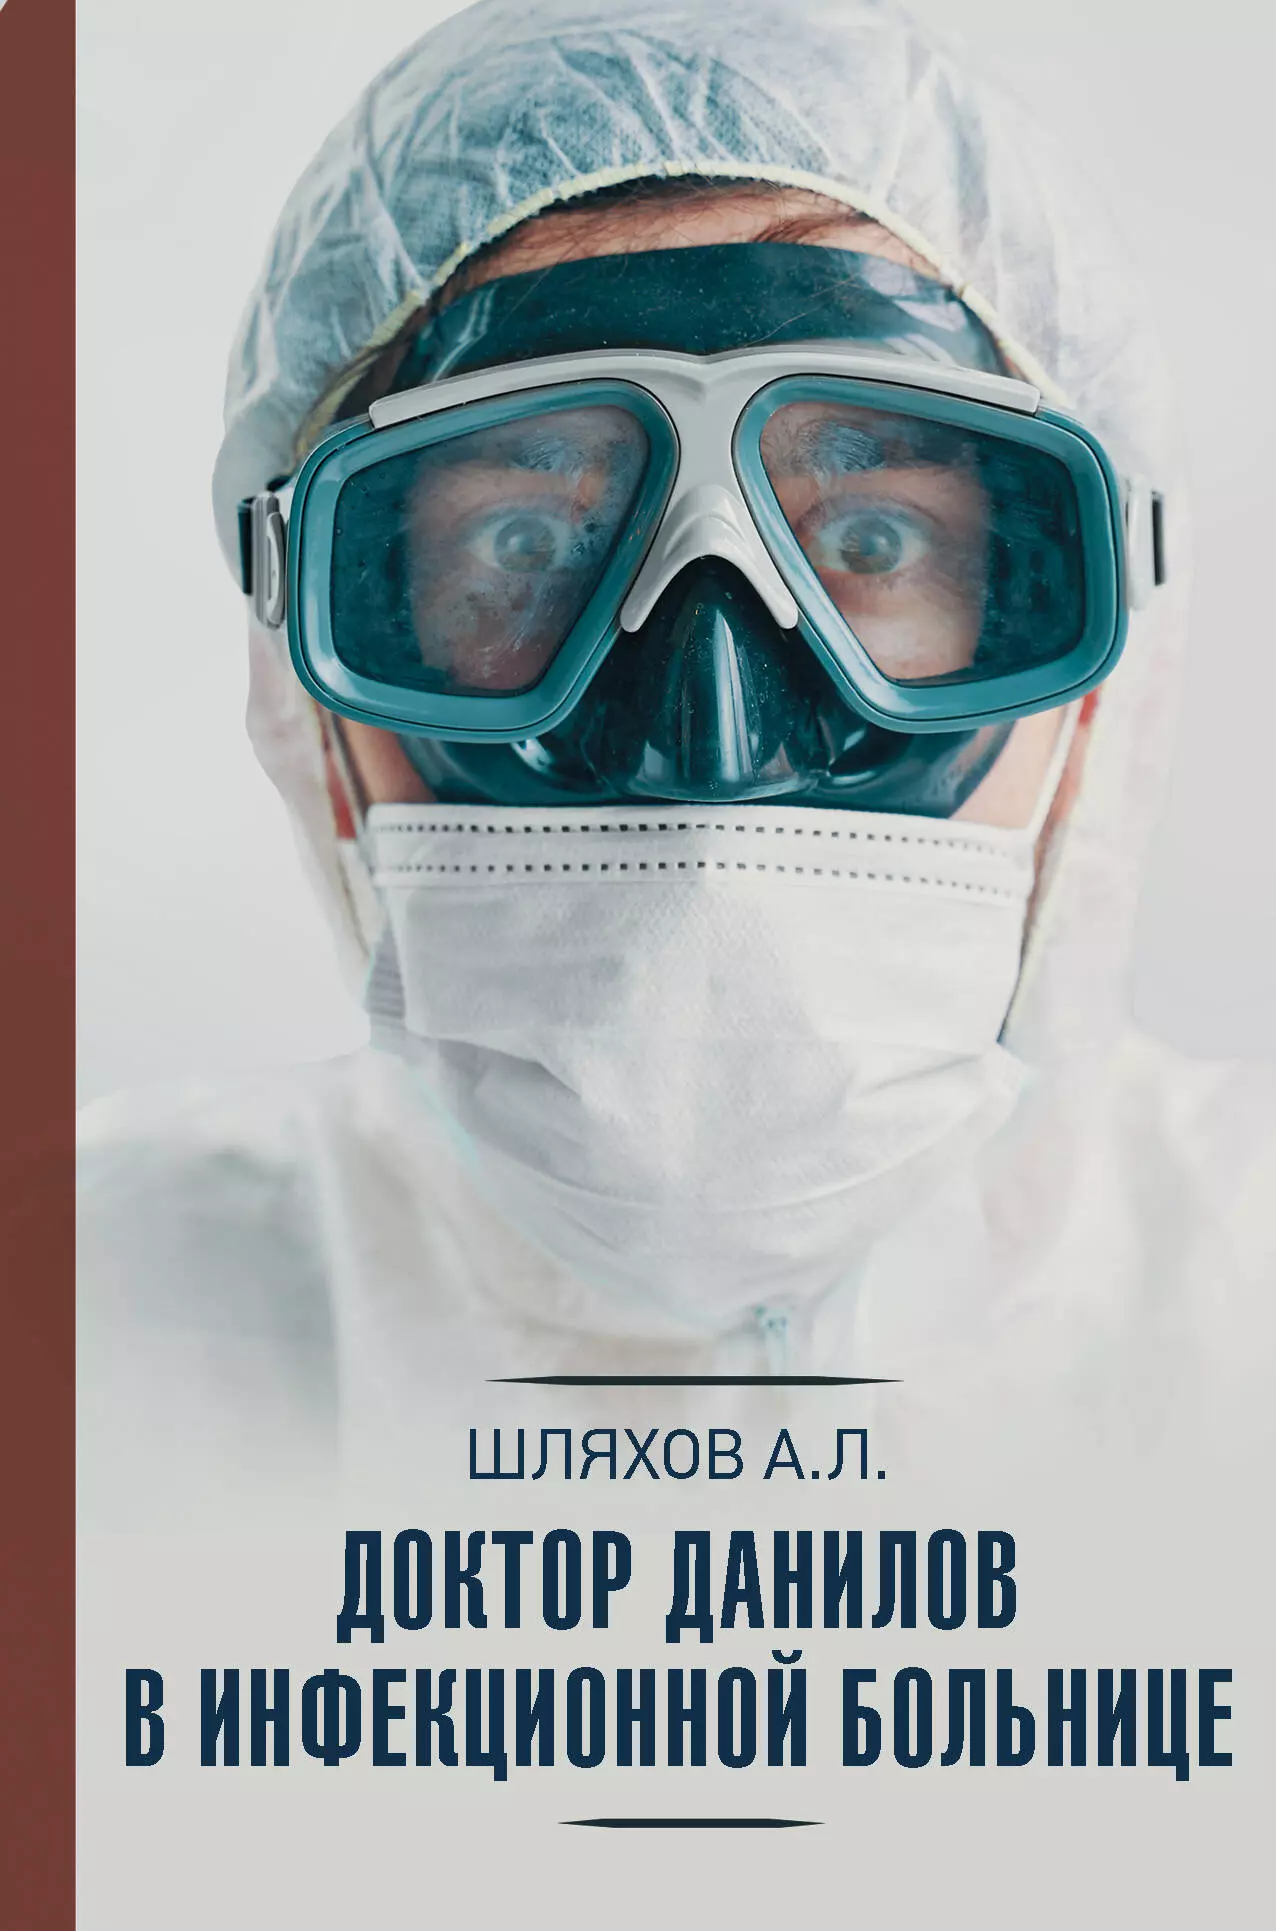 Доктор Данилов в инфекционной больнице шляхов андрей левонович доктор данилов в инфекционной больнице